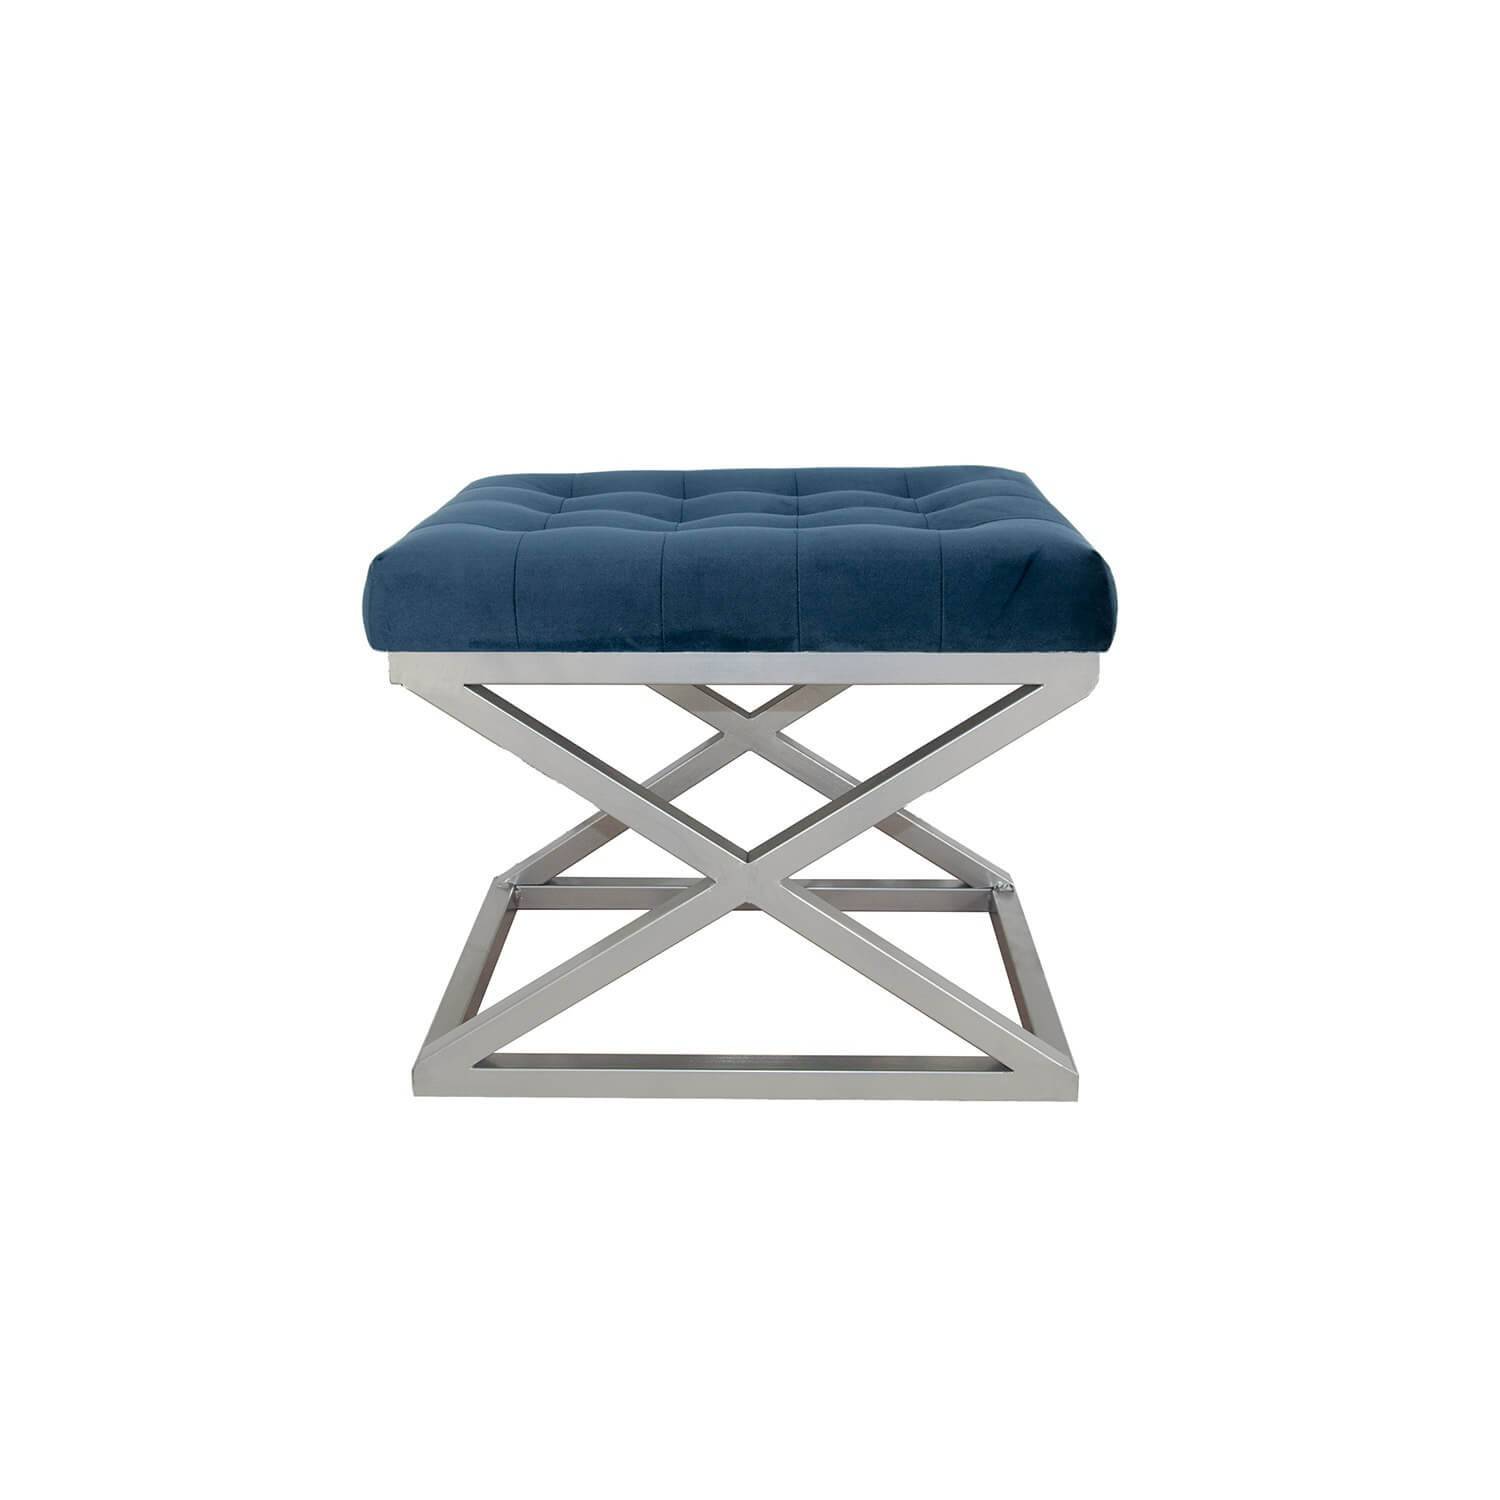 Ulad Taburete de metal plateado y terciopelo azul marino, asiento tapizado